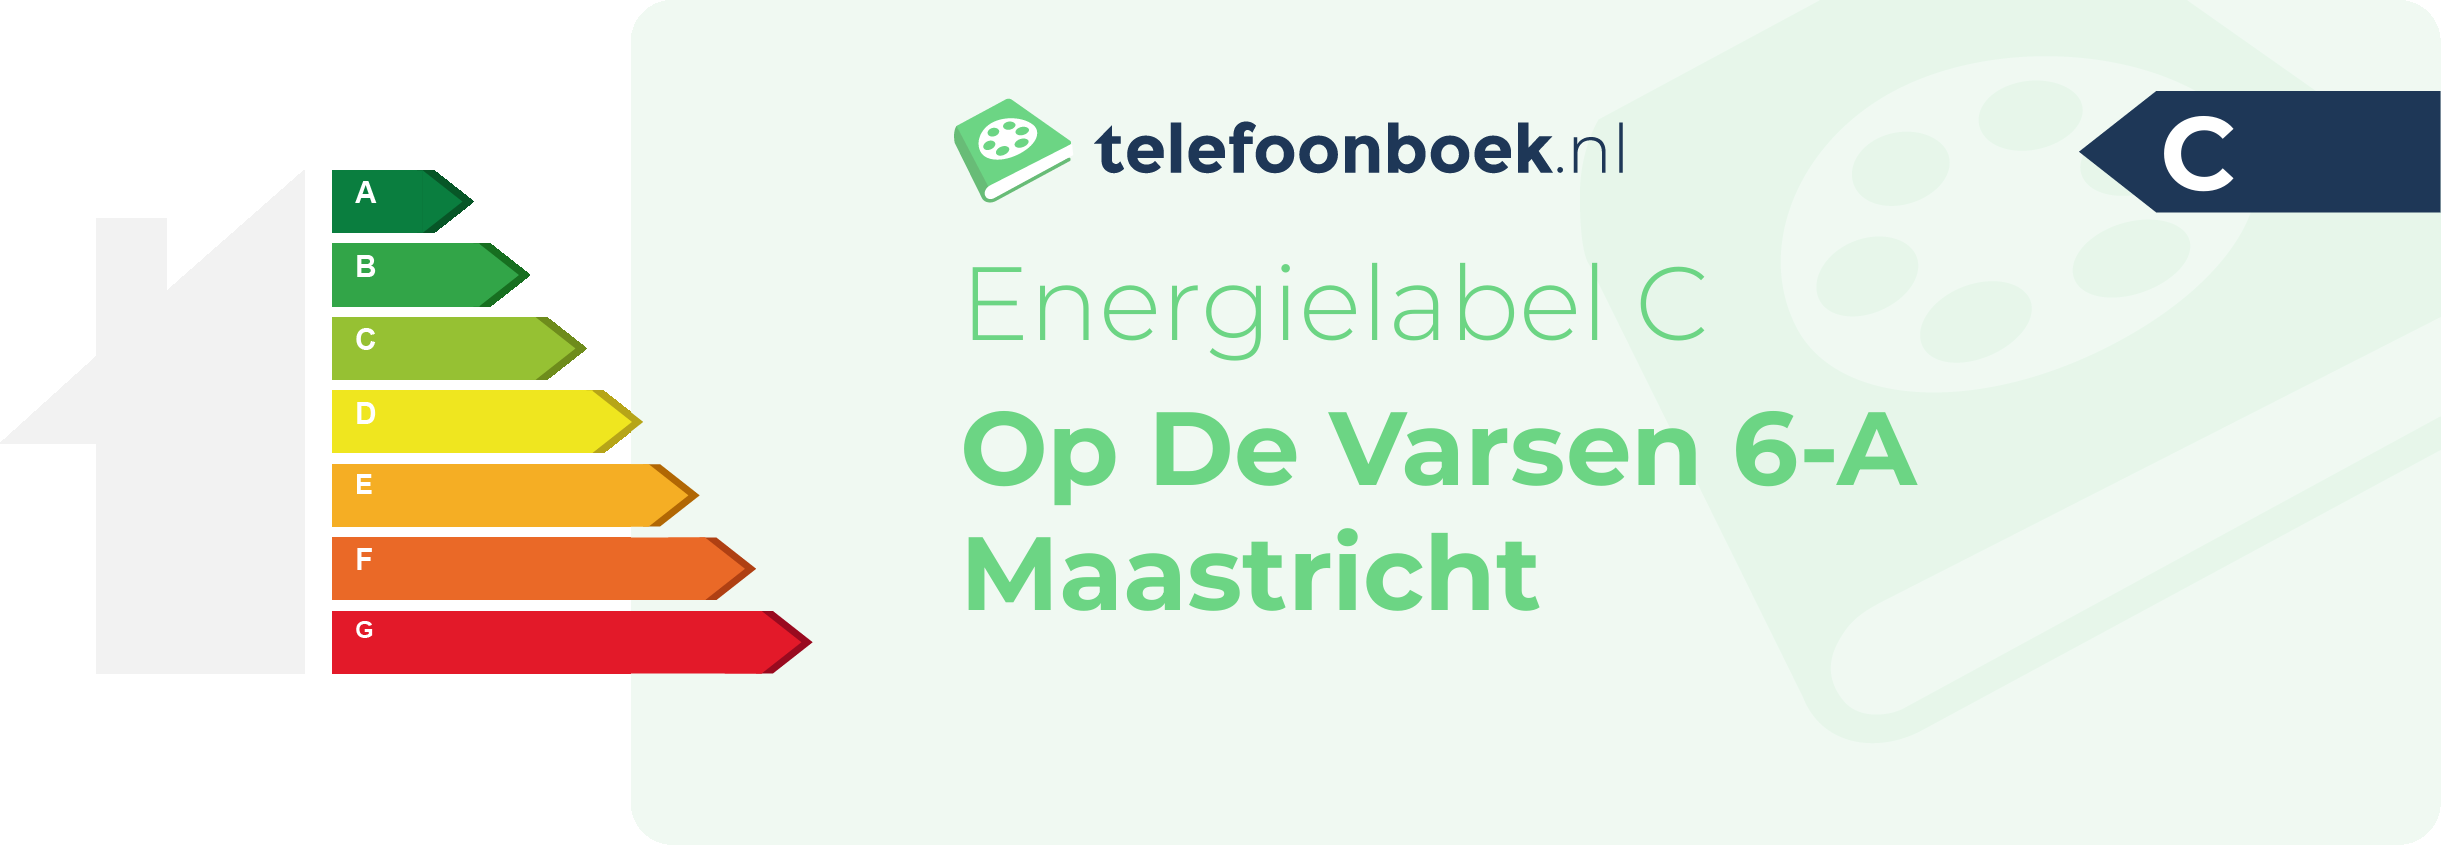 Energielabel Op De Varsen 6-A Maastricht